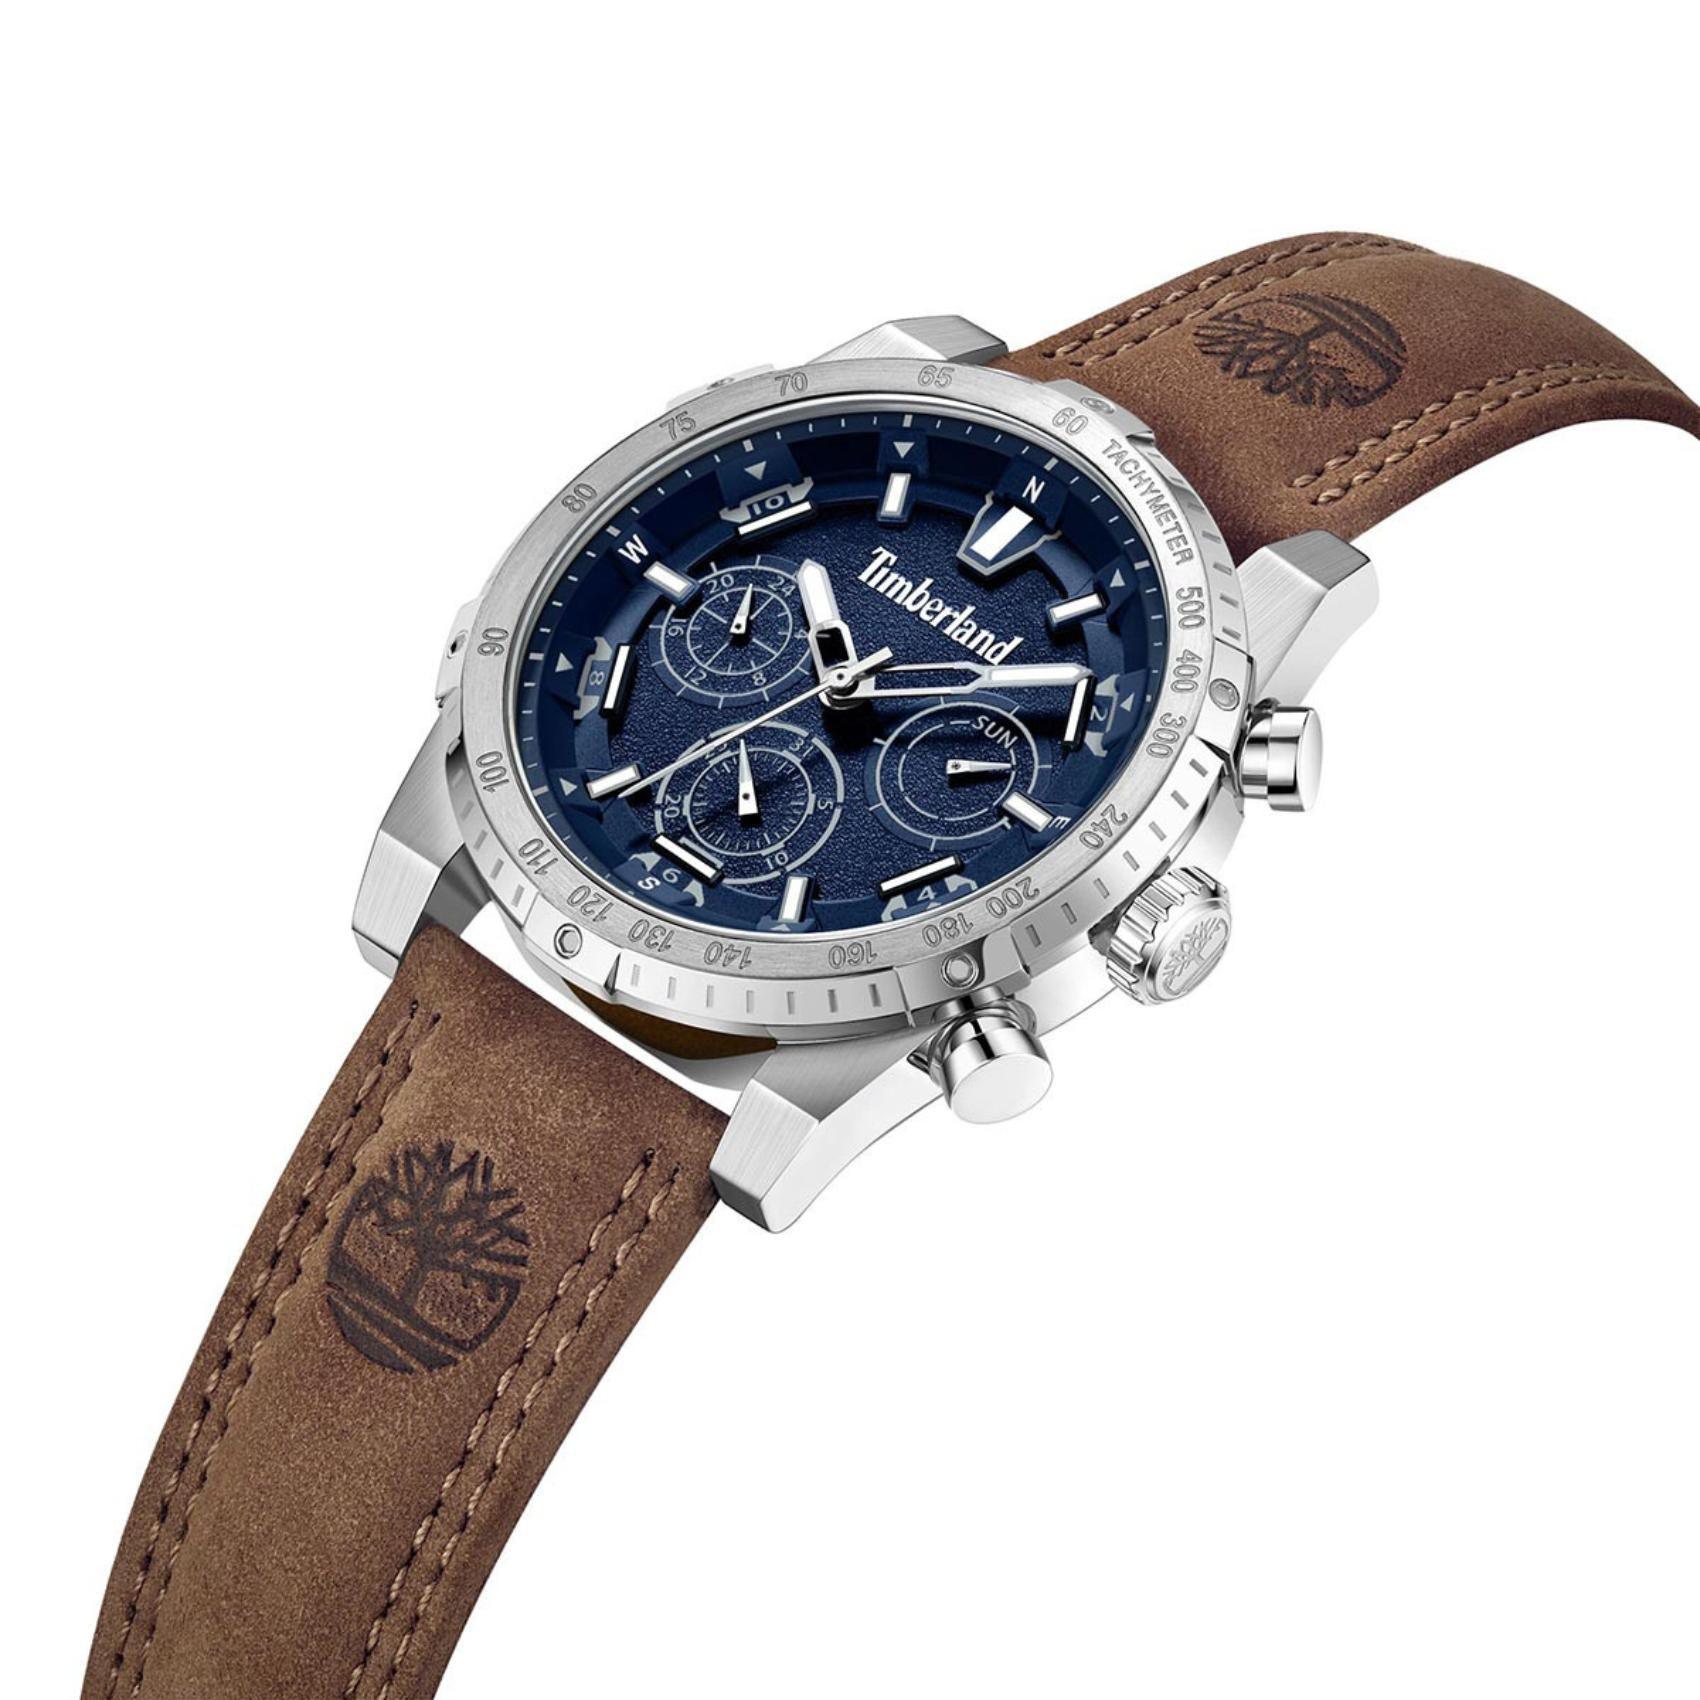 Ρολόι Timberland Sherbrook TDWGF2230402 με καφέ δερμάτινο λουρί, μπλε καντράν και κάσα διαμέτρου 45mm με ένδειξη ημερομηνίας και χρονογράφους.